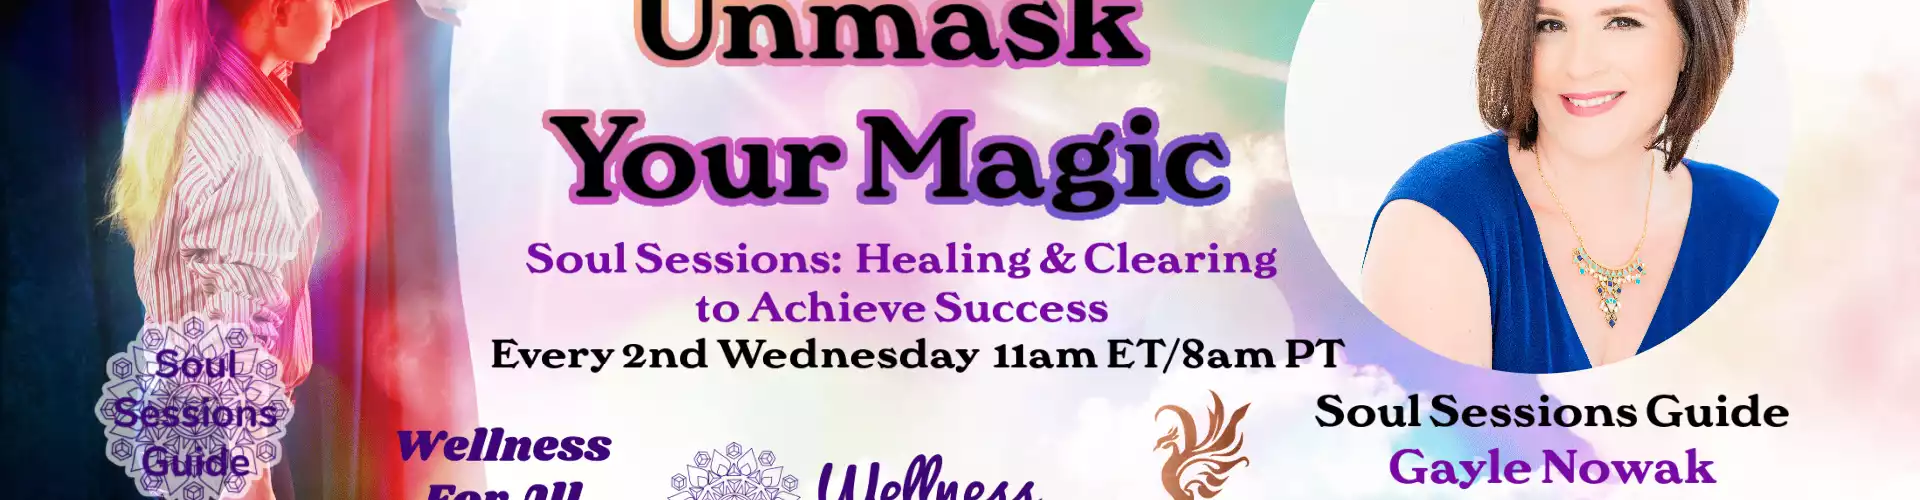 Desenmascara tus sesiones de Magic Soul con la guía WU Gayle Nowak